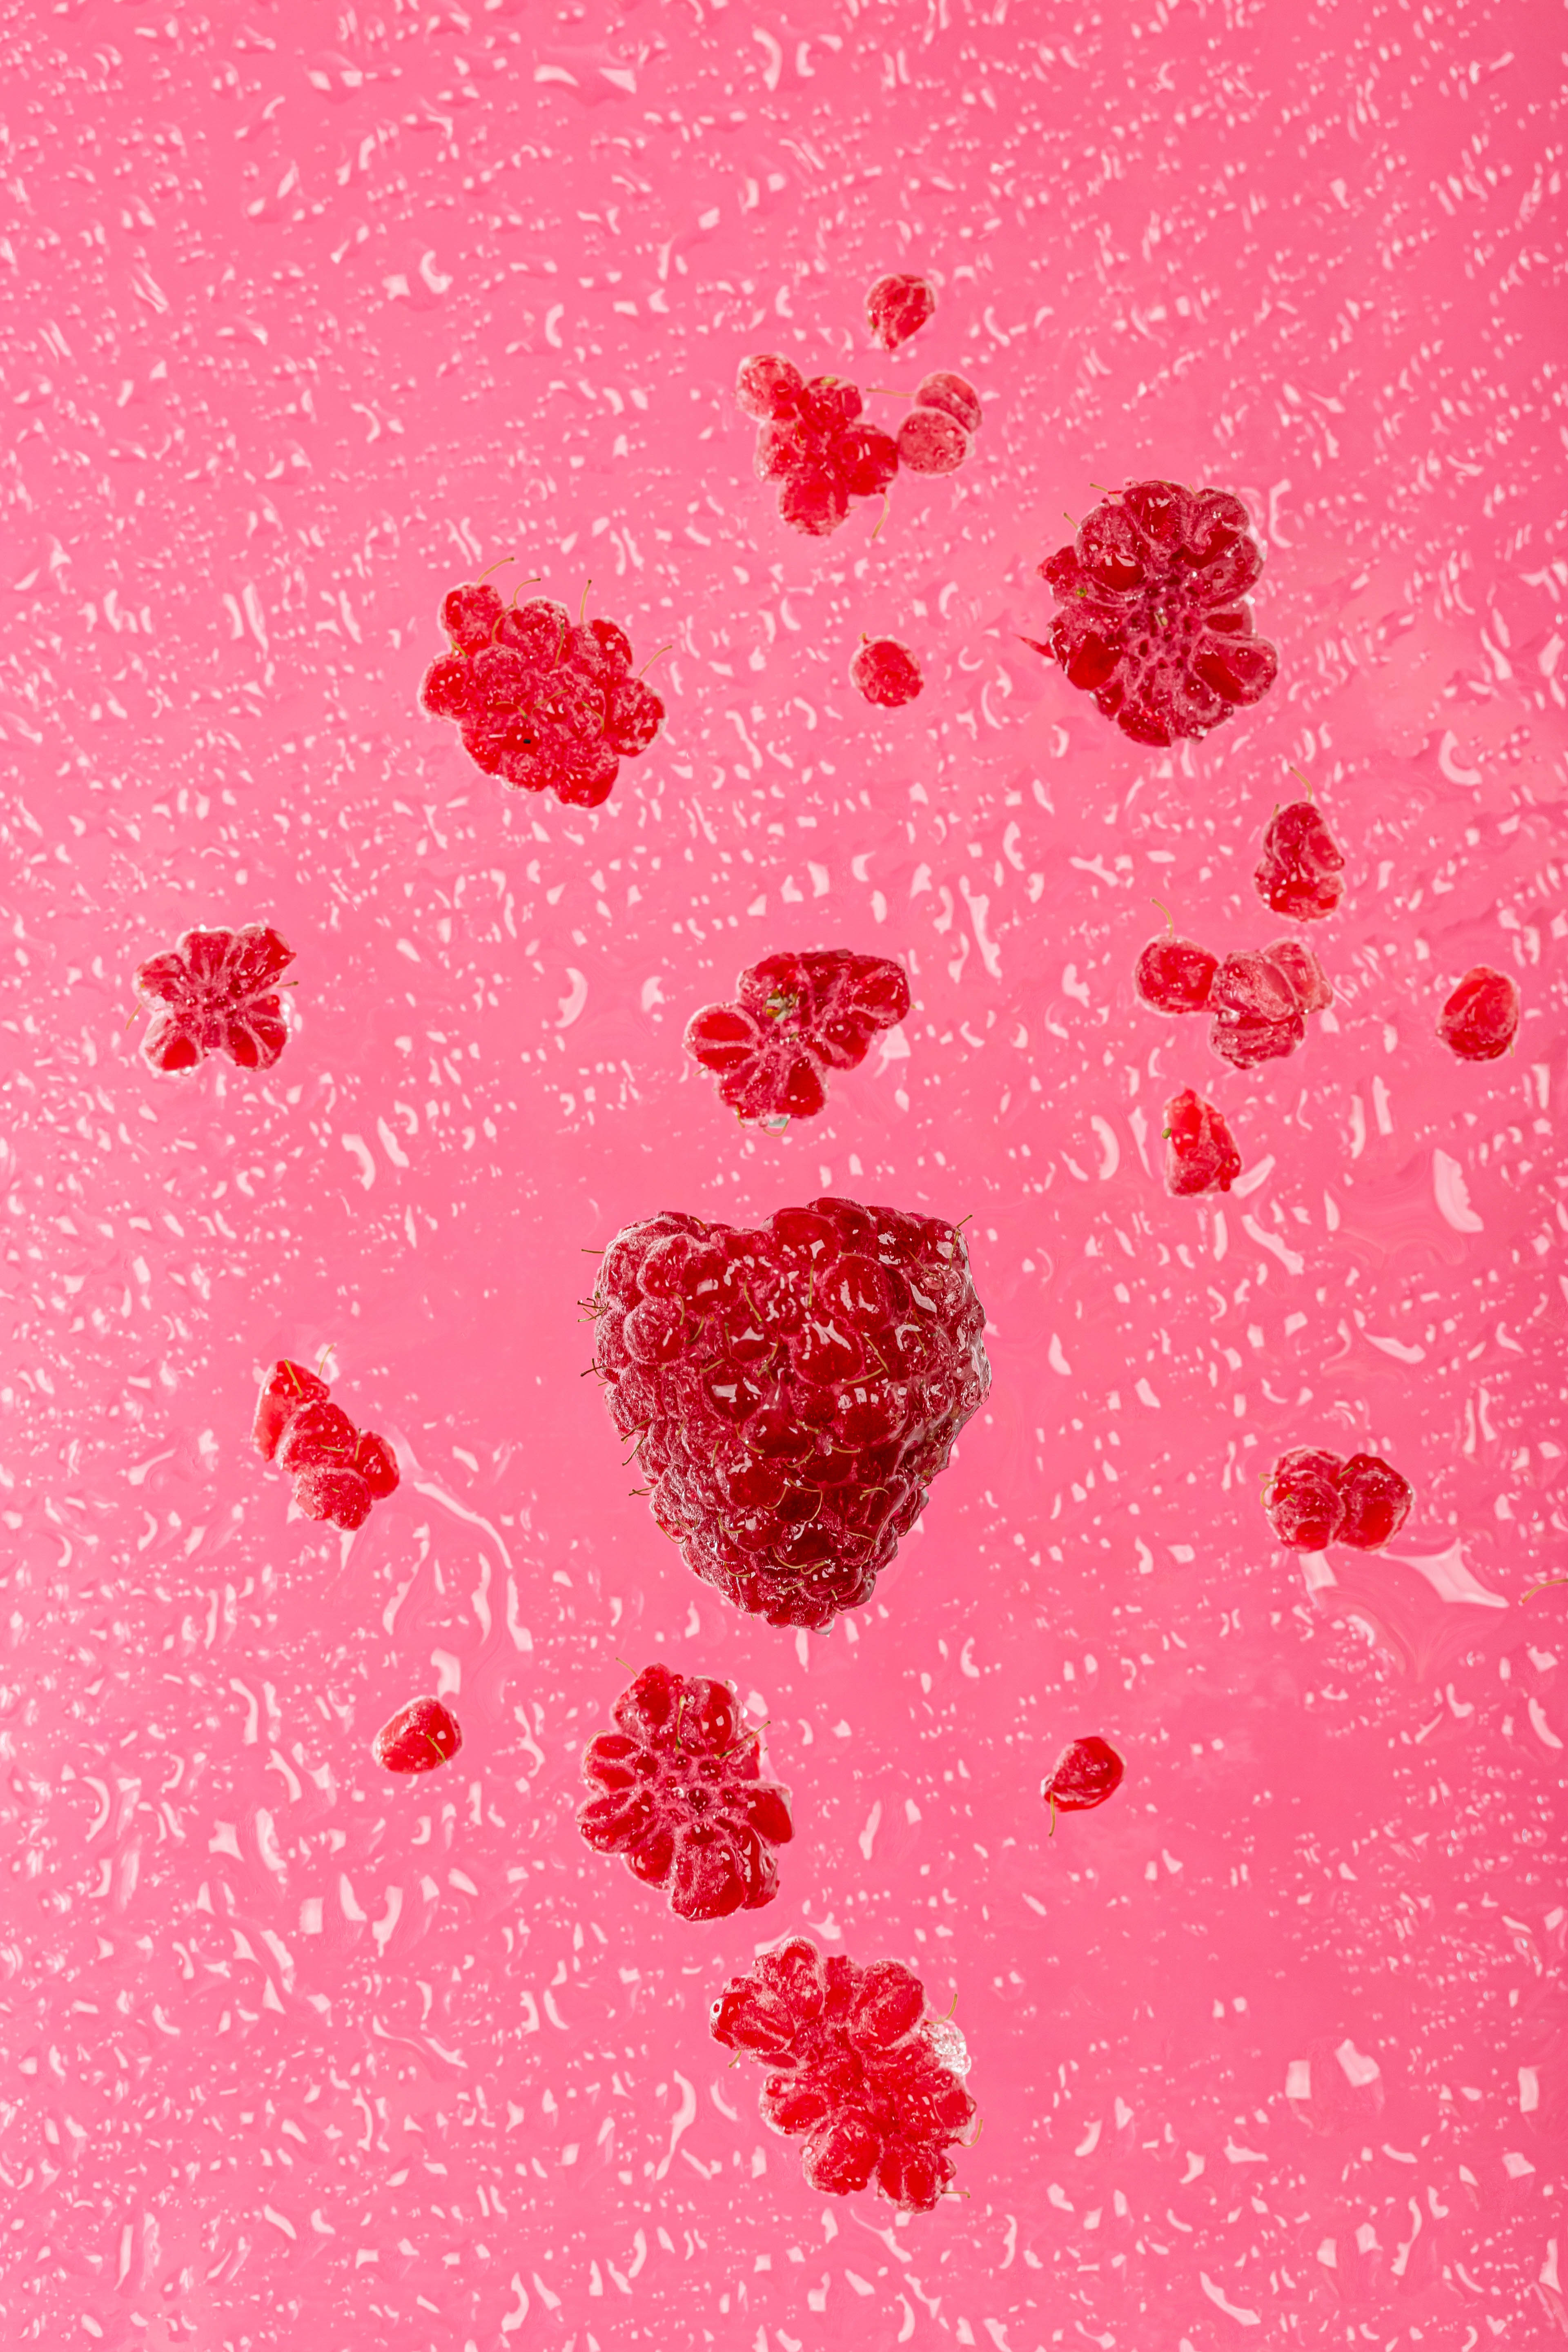 Raspberries Berries Drops Pink Macro